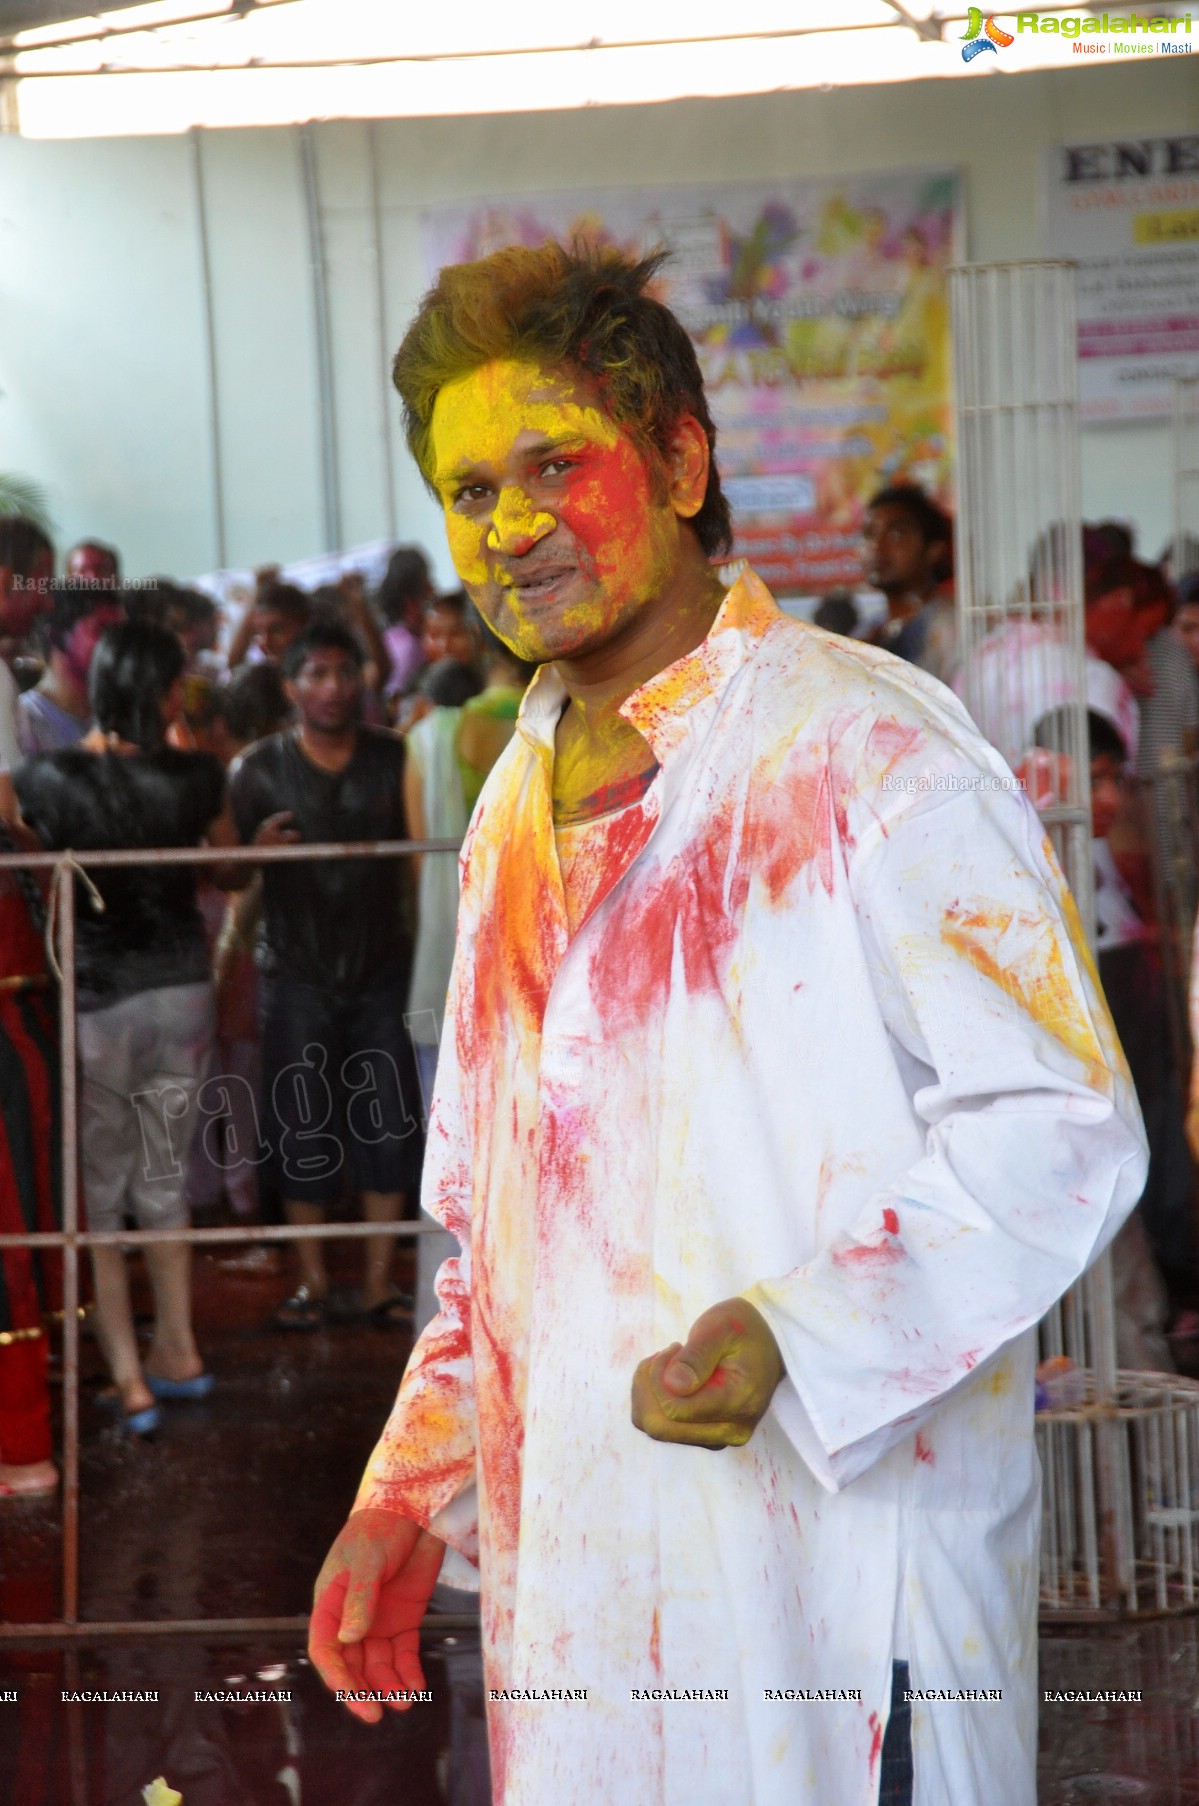 Rangeela Re - Punjabi Seva Samithi Youth Wing Holi 2013 Celebrations, Hyderabad